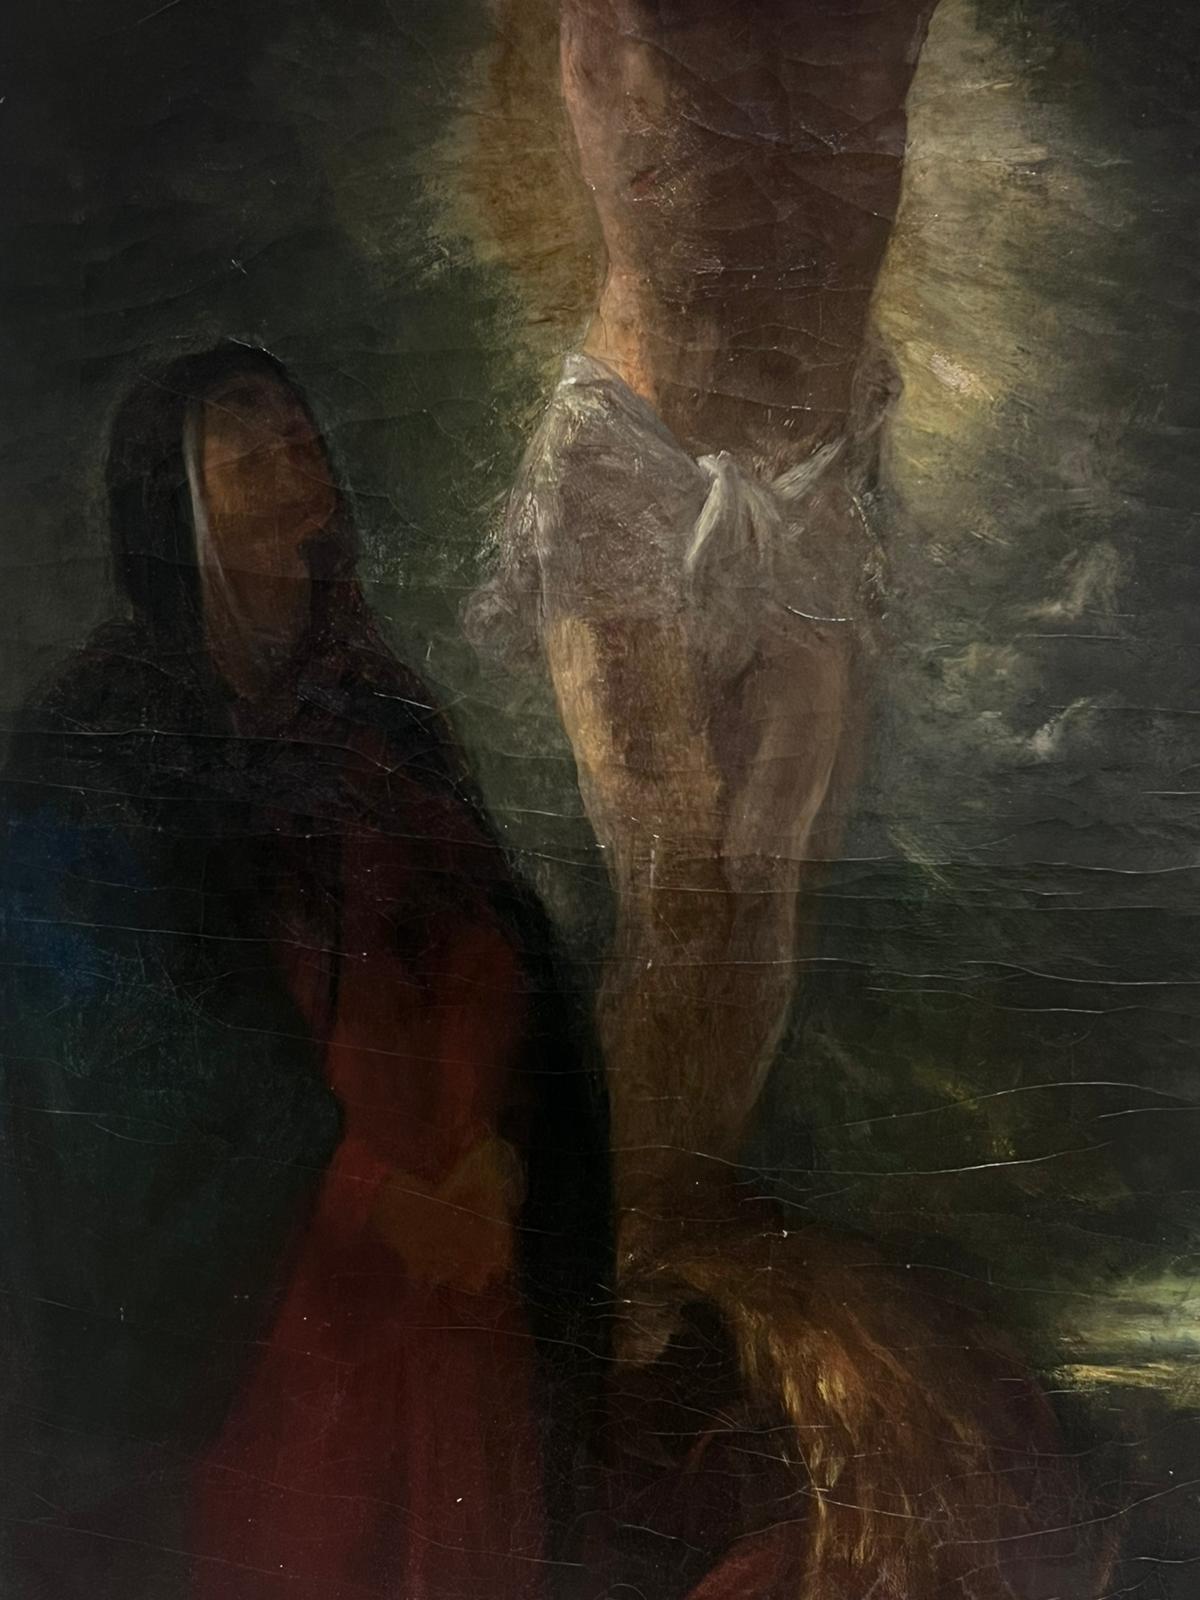 Großes Ölgemälde Christus am Kreuz, Französische Romantische Periode der 1830er Jahre (Romantik), Painting, von Eugene Delacroix